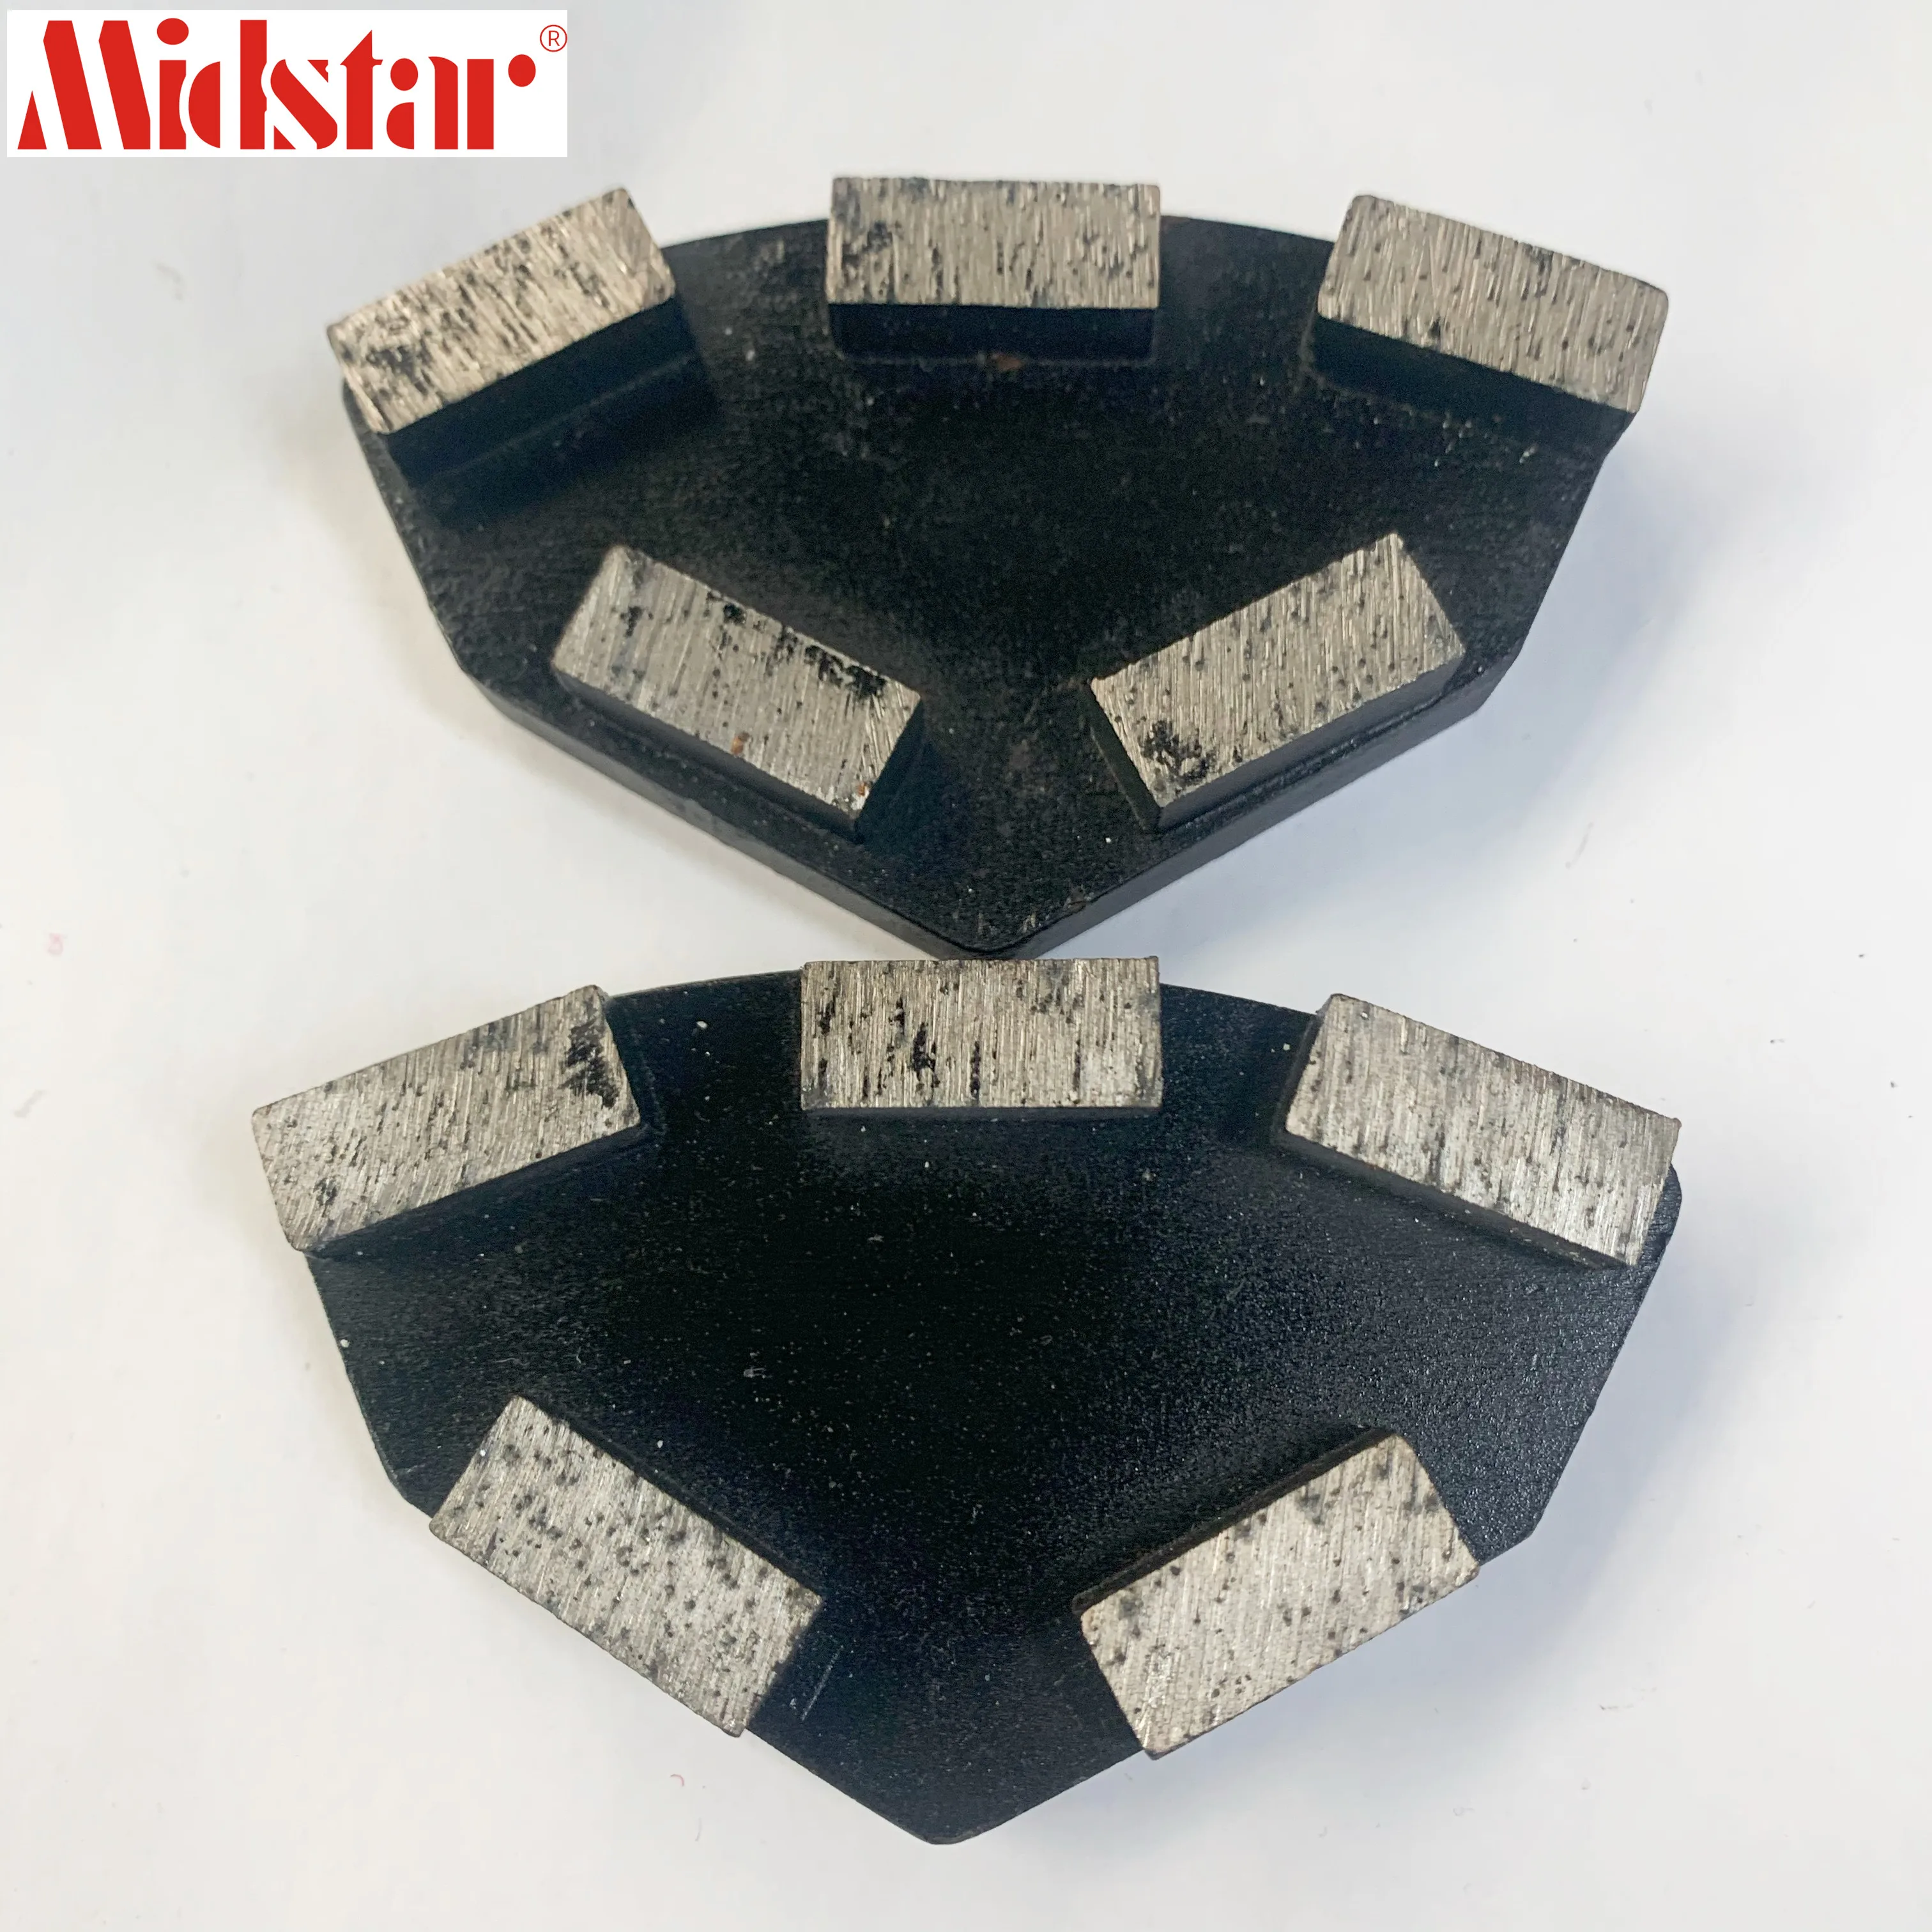 Cassani Metal Bond Diamond Grinding Block for concrete stone polishing